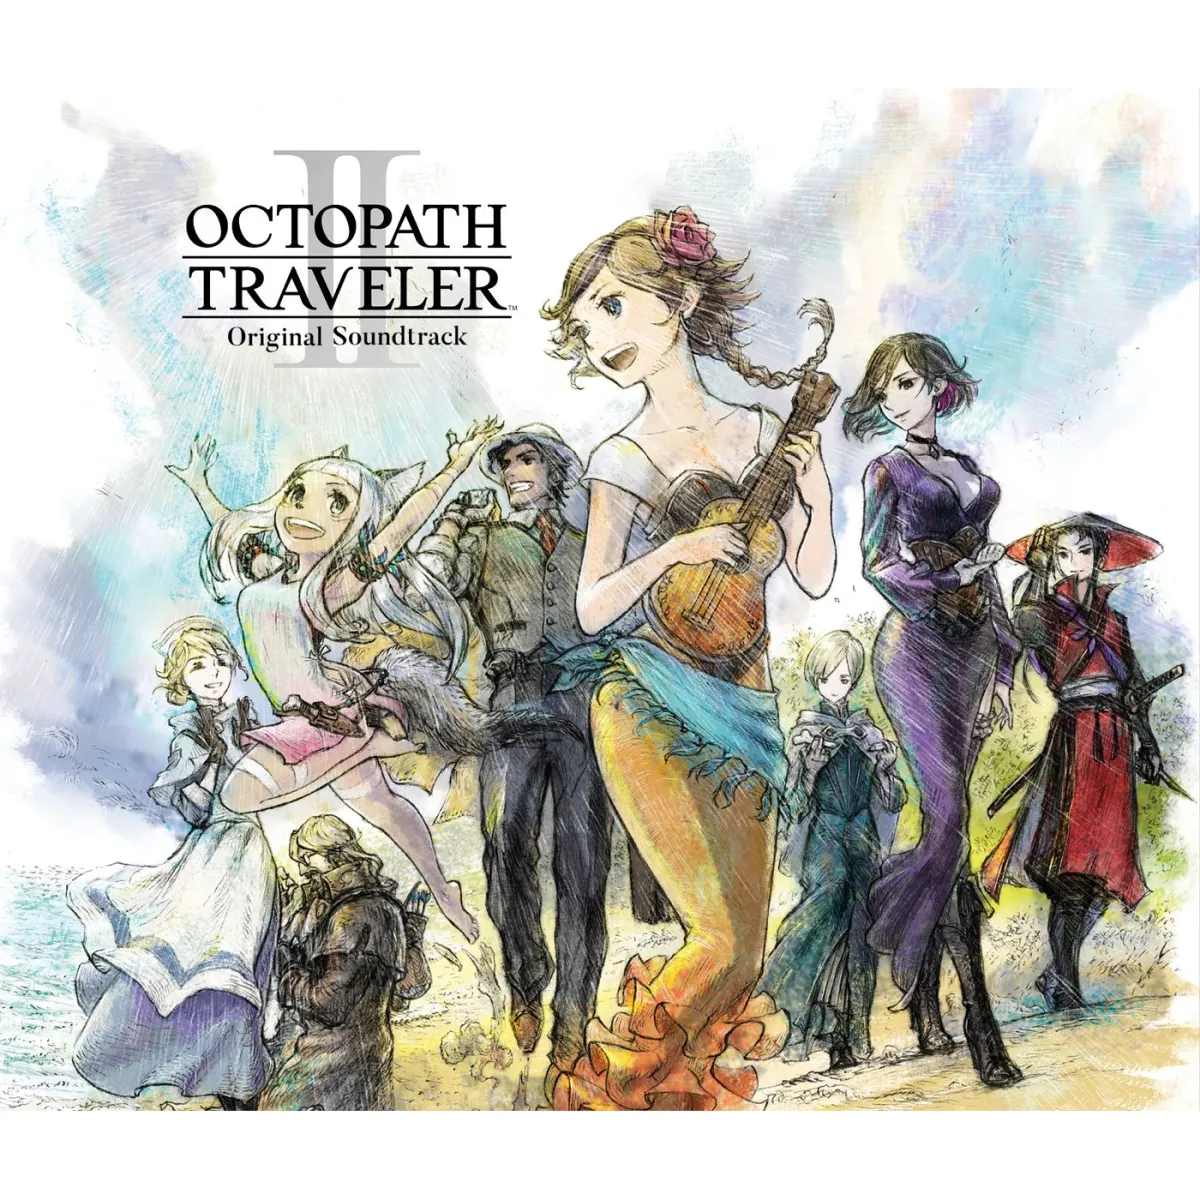 La banda sonora de Octopath Traveler 2 abarca 6 CD